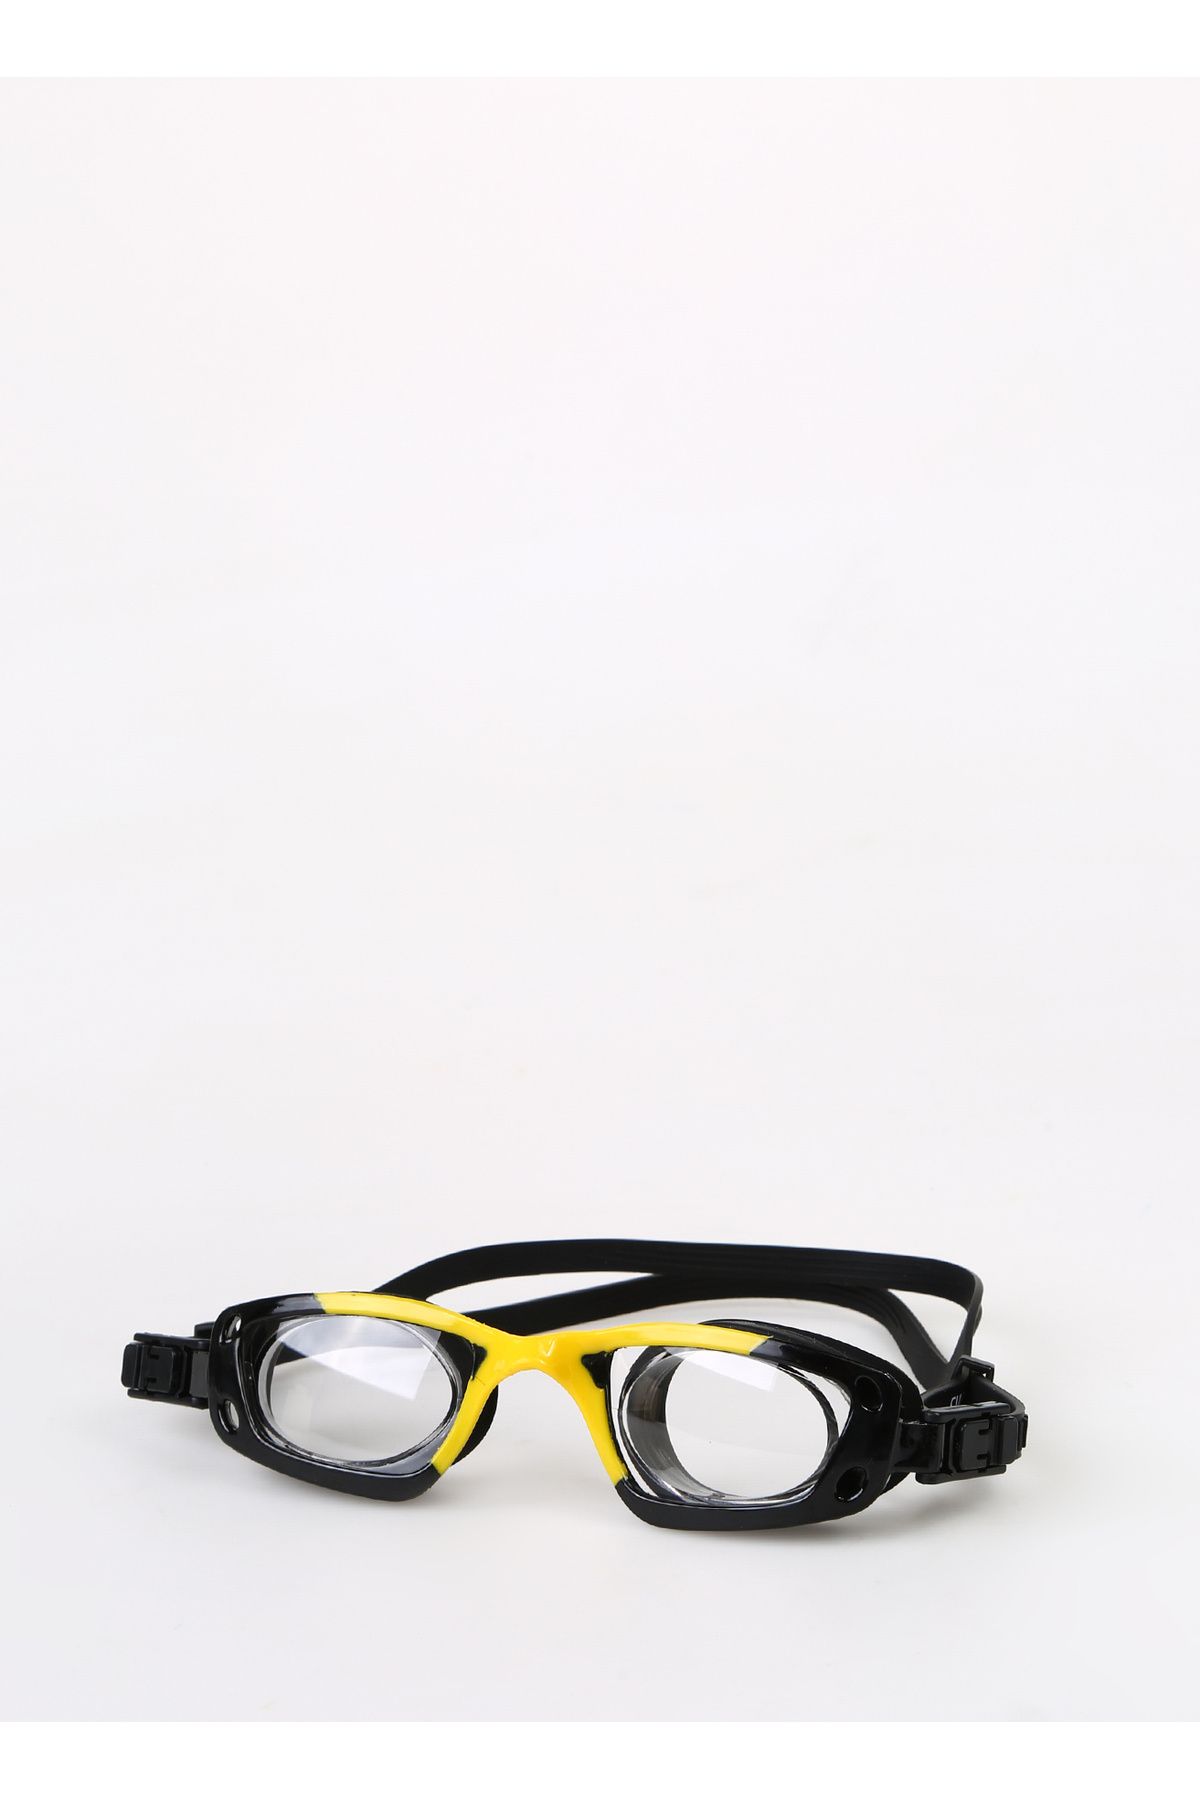 TRYON Siyah - Sarı Unisex Yüzücü Gözlüğü YG-3200